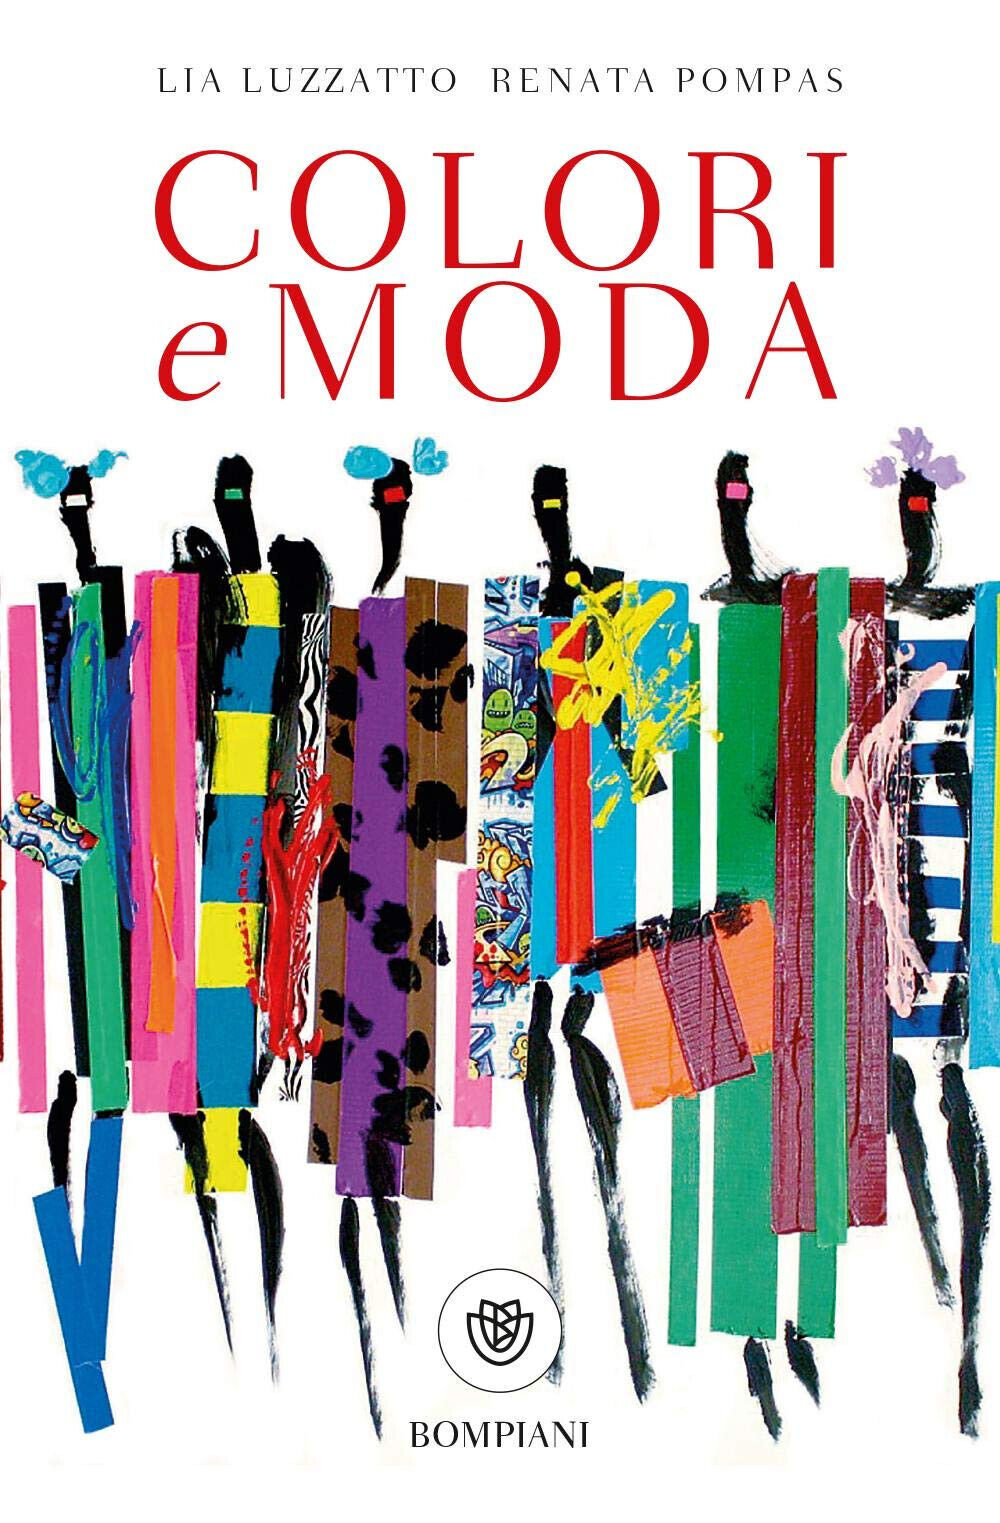 Colori e moda - Lia Luzzatto, Renata Pompas - Bompiani, 2018 libro usato